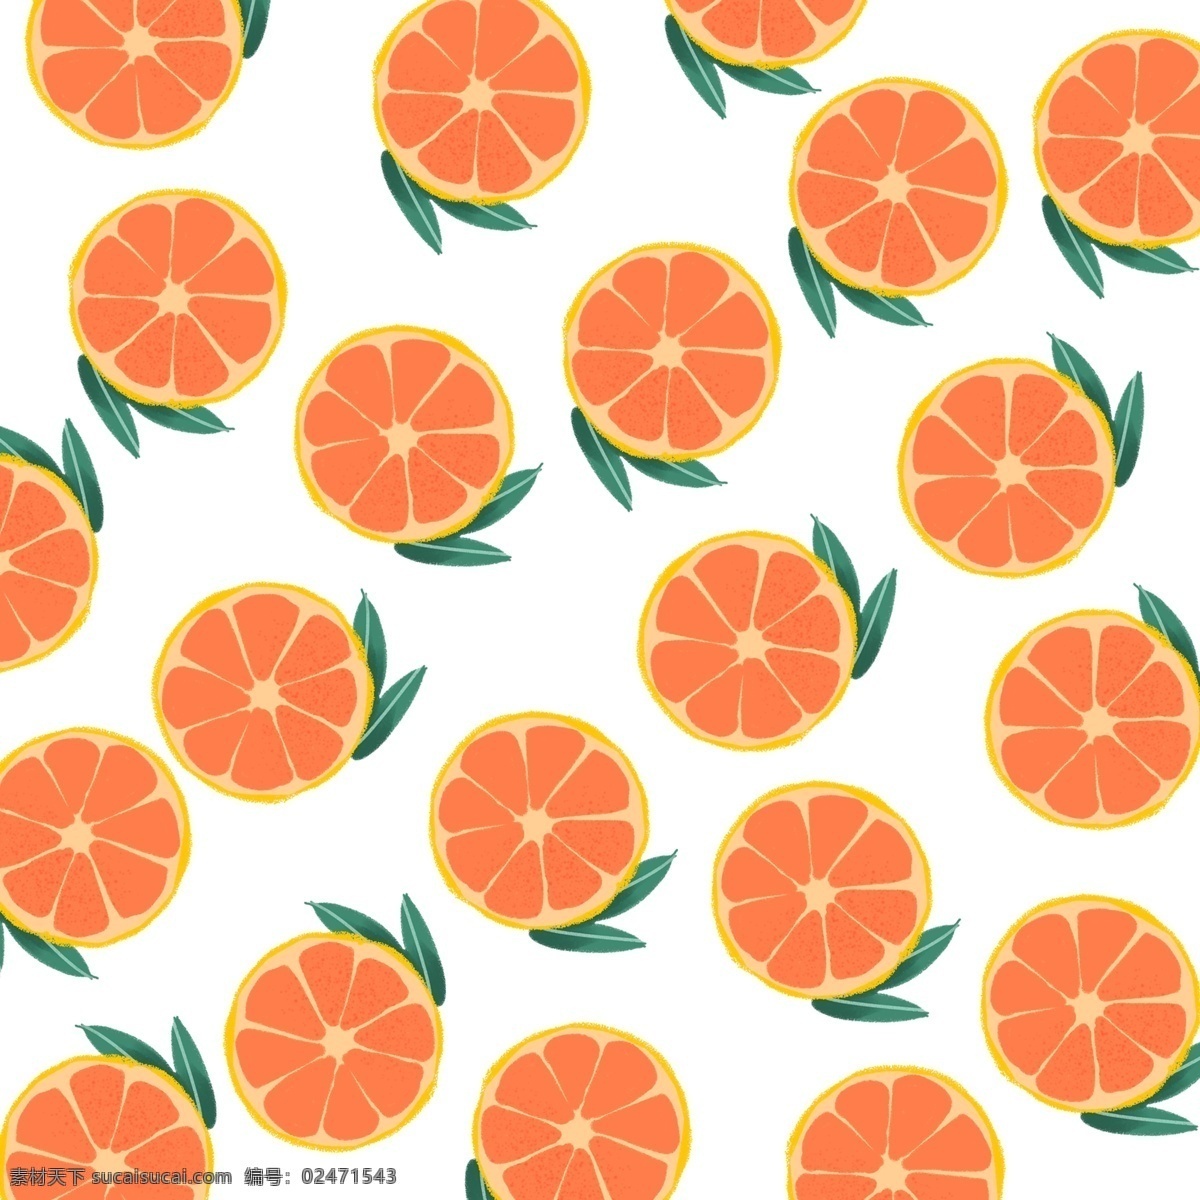 创意 小清 新手 绘 风 橘子 装饰 图案 小清新 手绘风 装饰图案 水果 橙色 橙子 清爽 美食 切开的橘子 截面